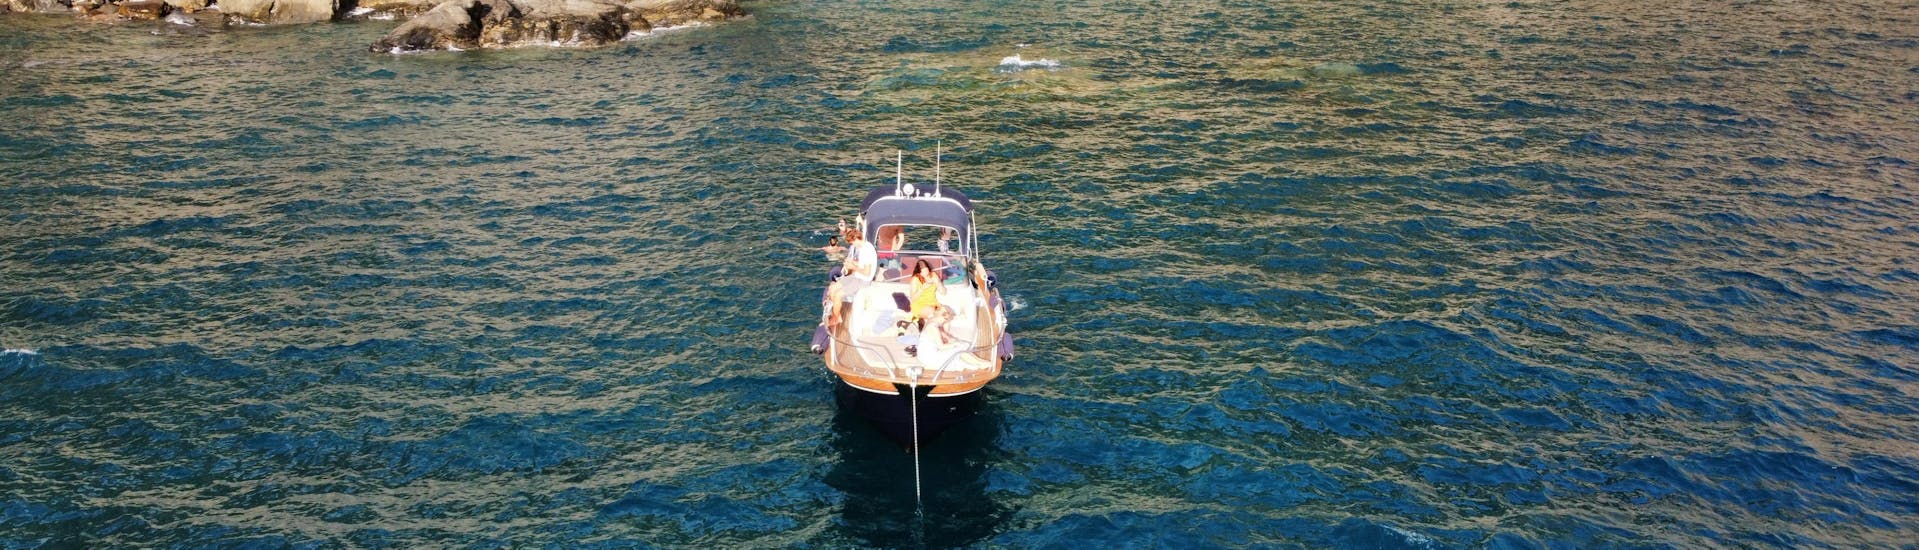 Gita privata in barca da Levanto alle Cinque Terre e Porto Venere con pranzo.